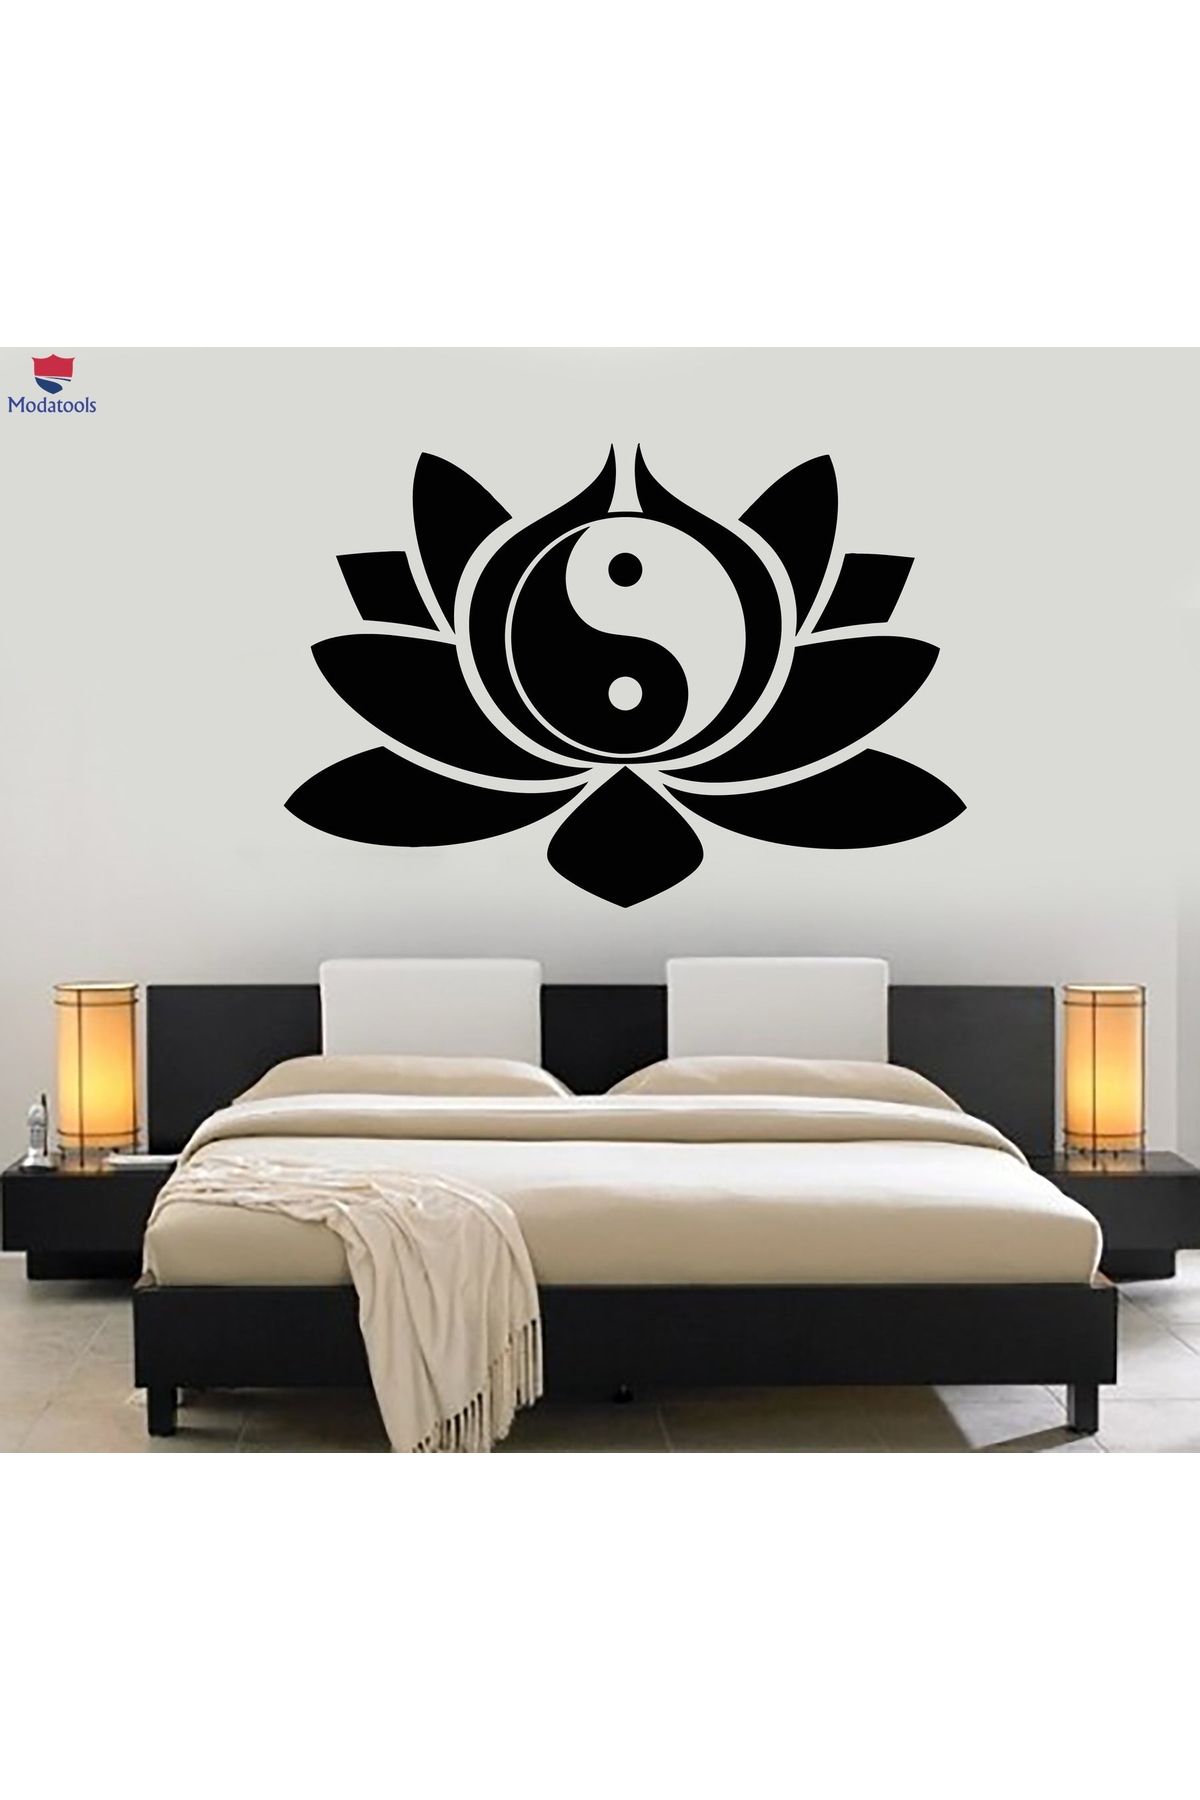 Modatools Oturma Odası, Yatak Odası Duvar Sticker Lotus Çiçeği Yin Yang Sembolü Budizm Yoga Çıkartmalar